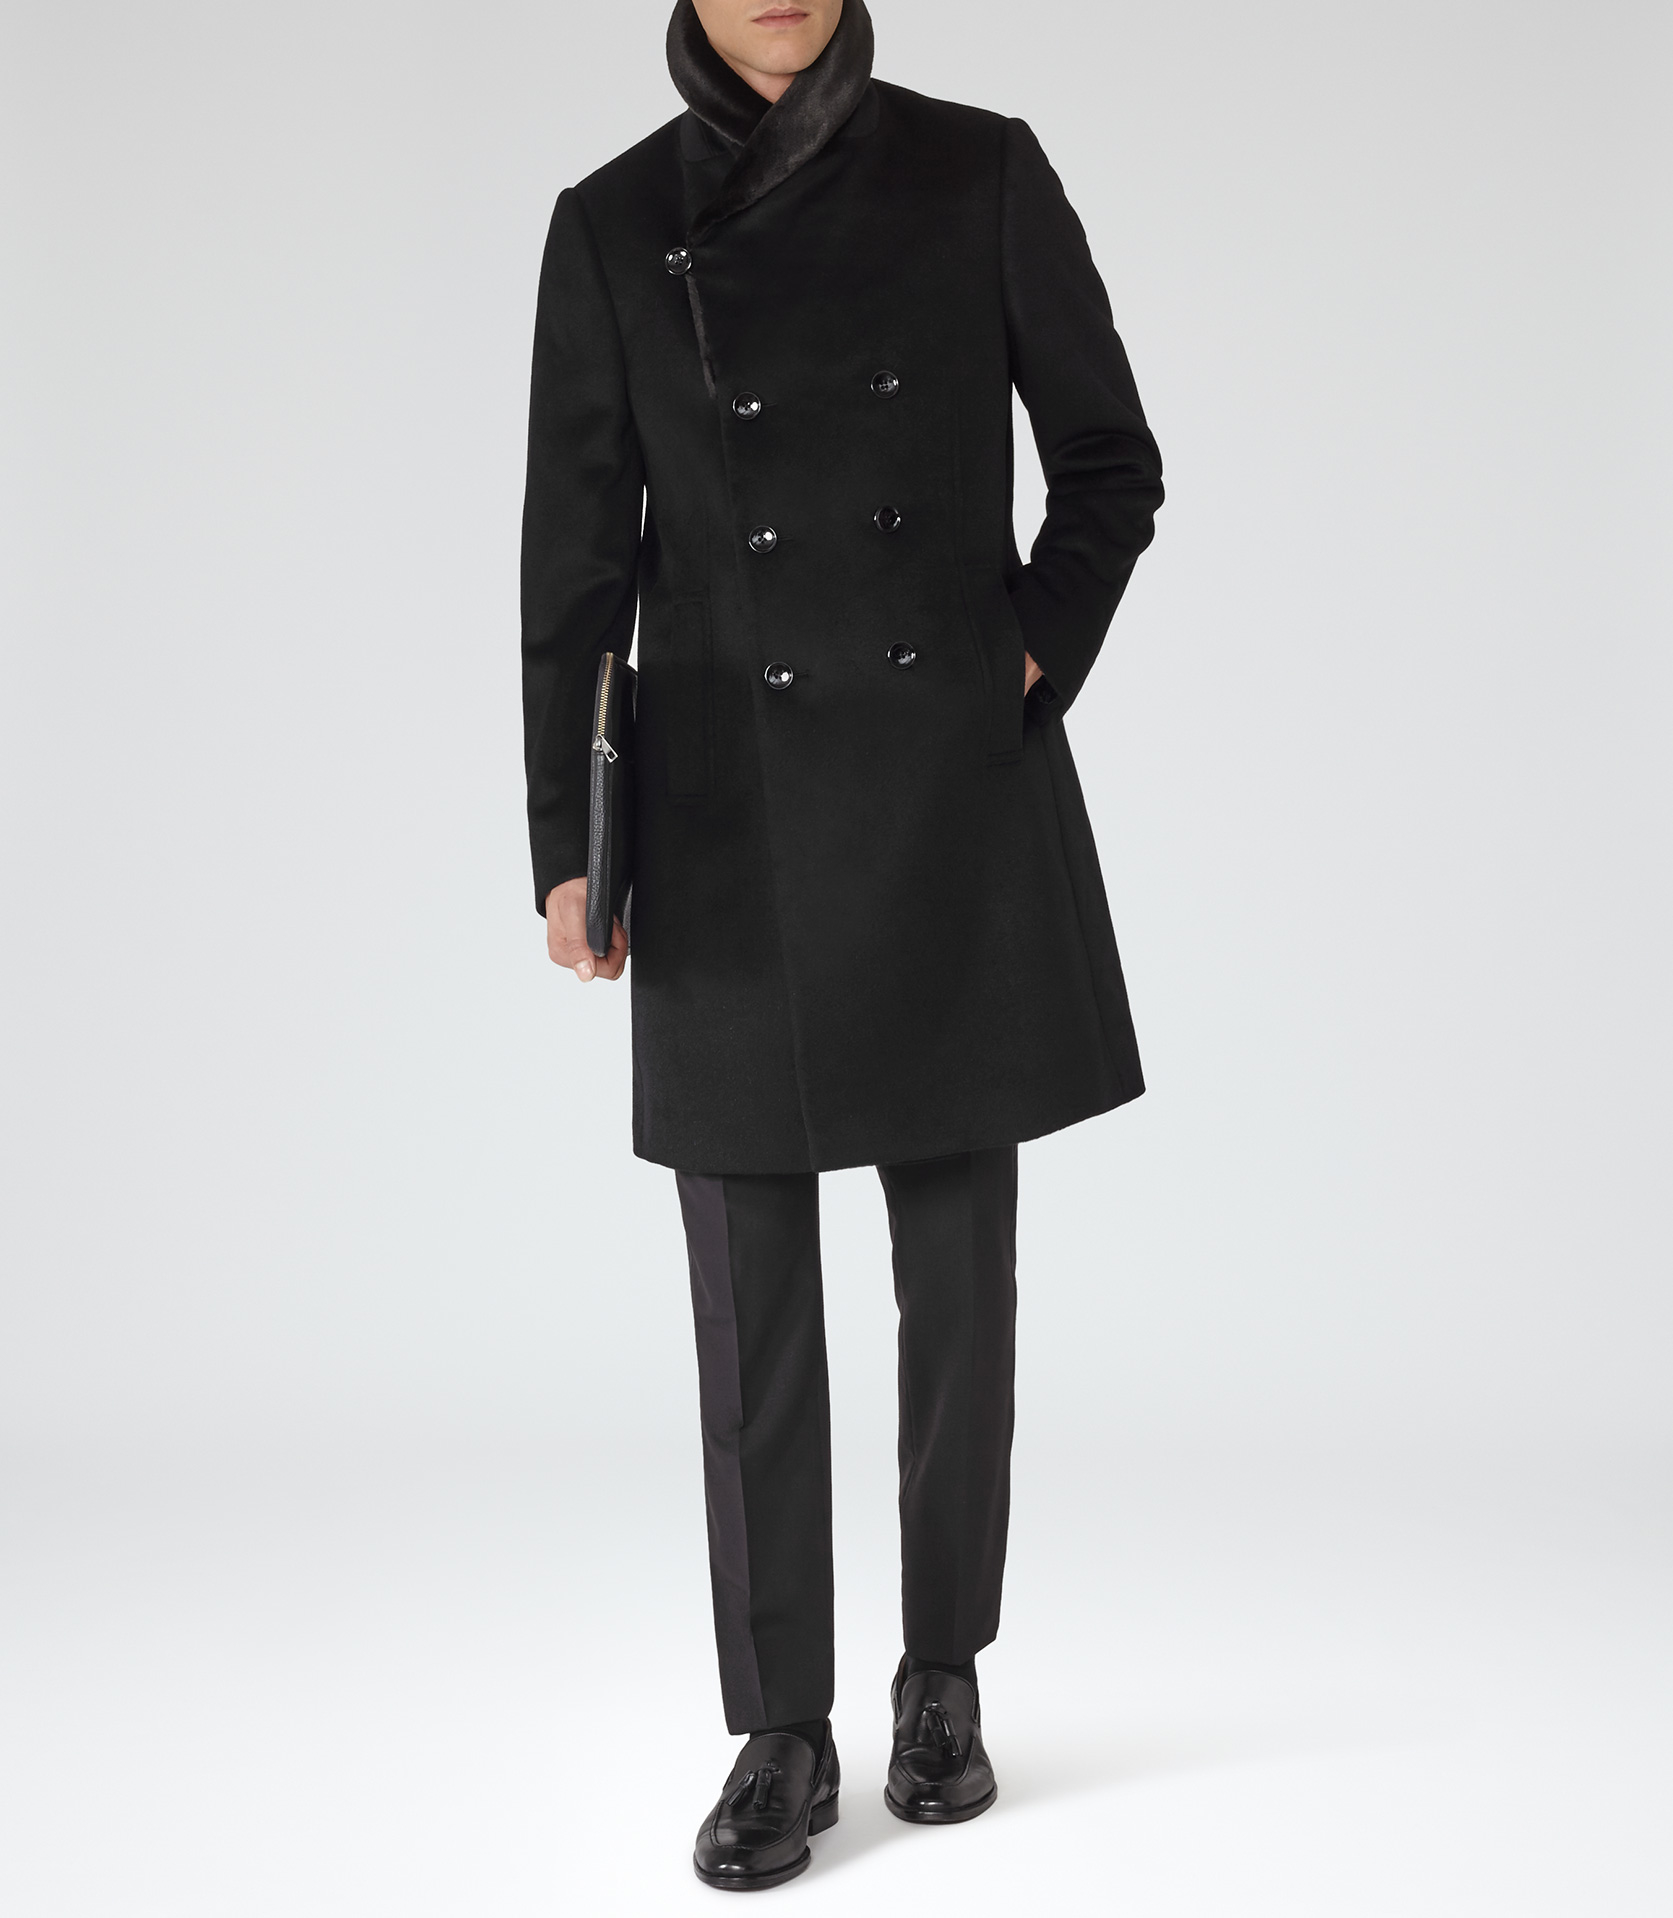 Reiss Wool Mcgregor Shawl Collar Overcoat in Black for Men - Lyst